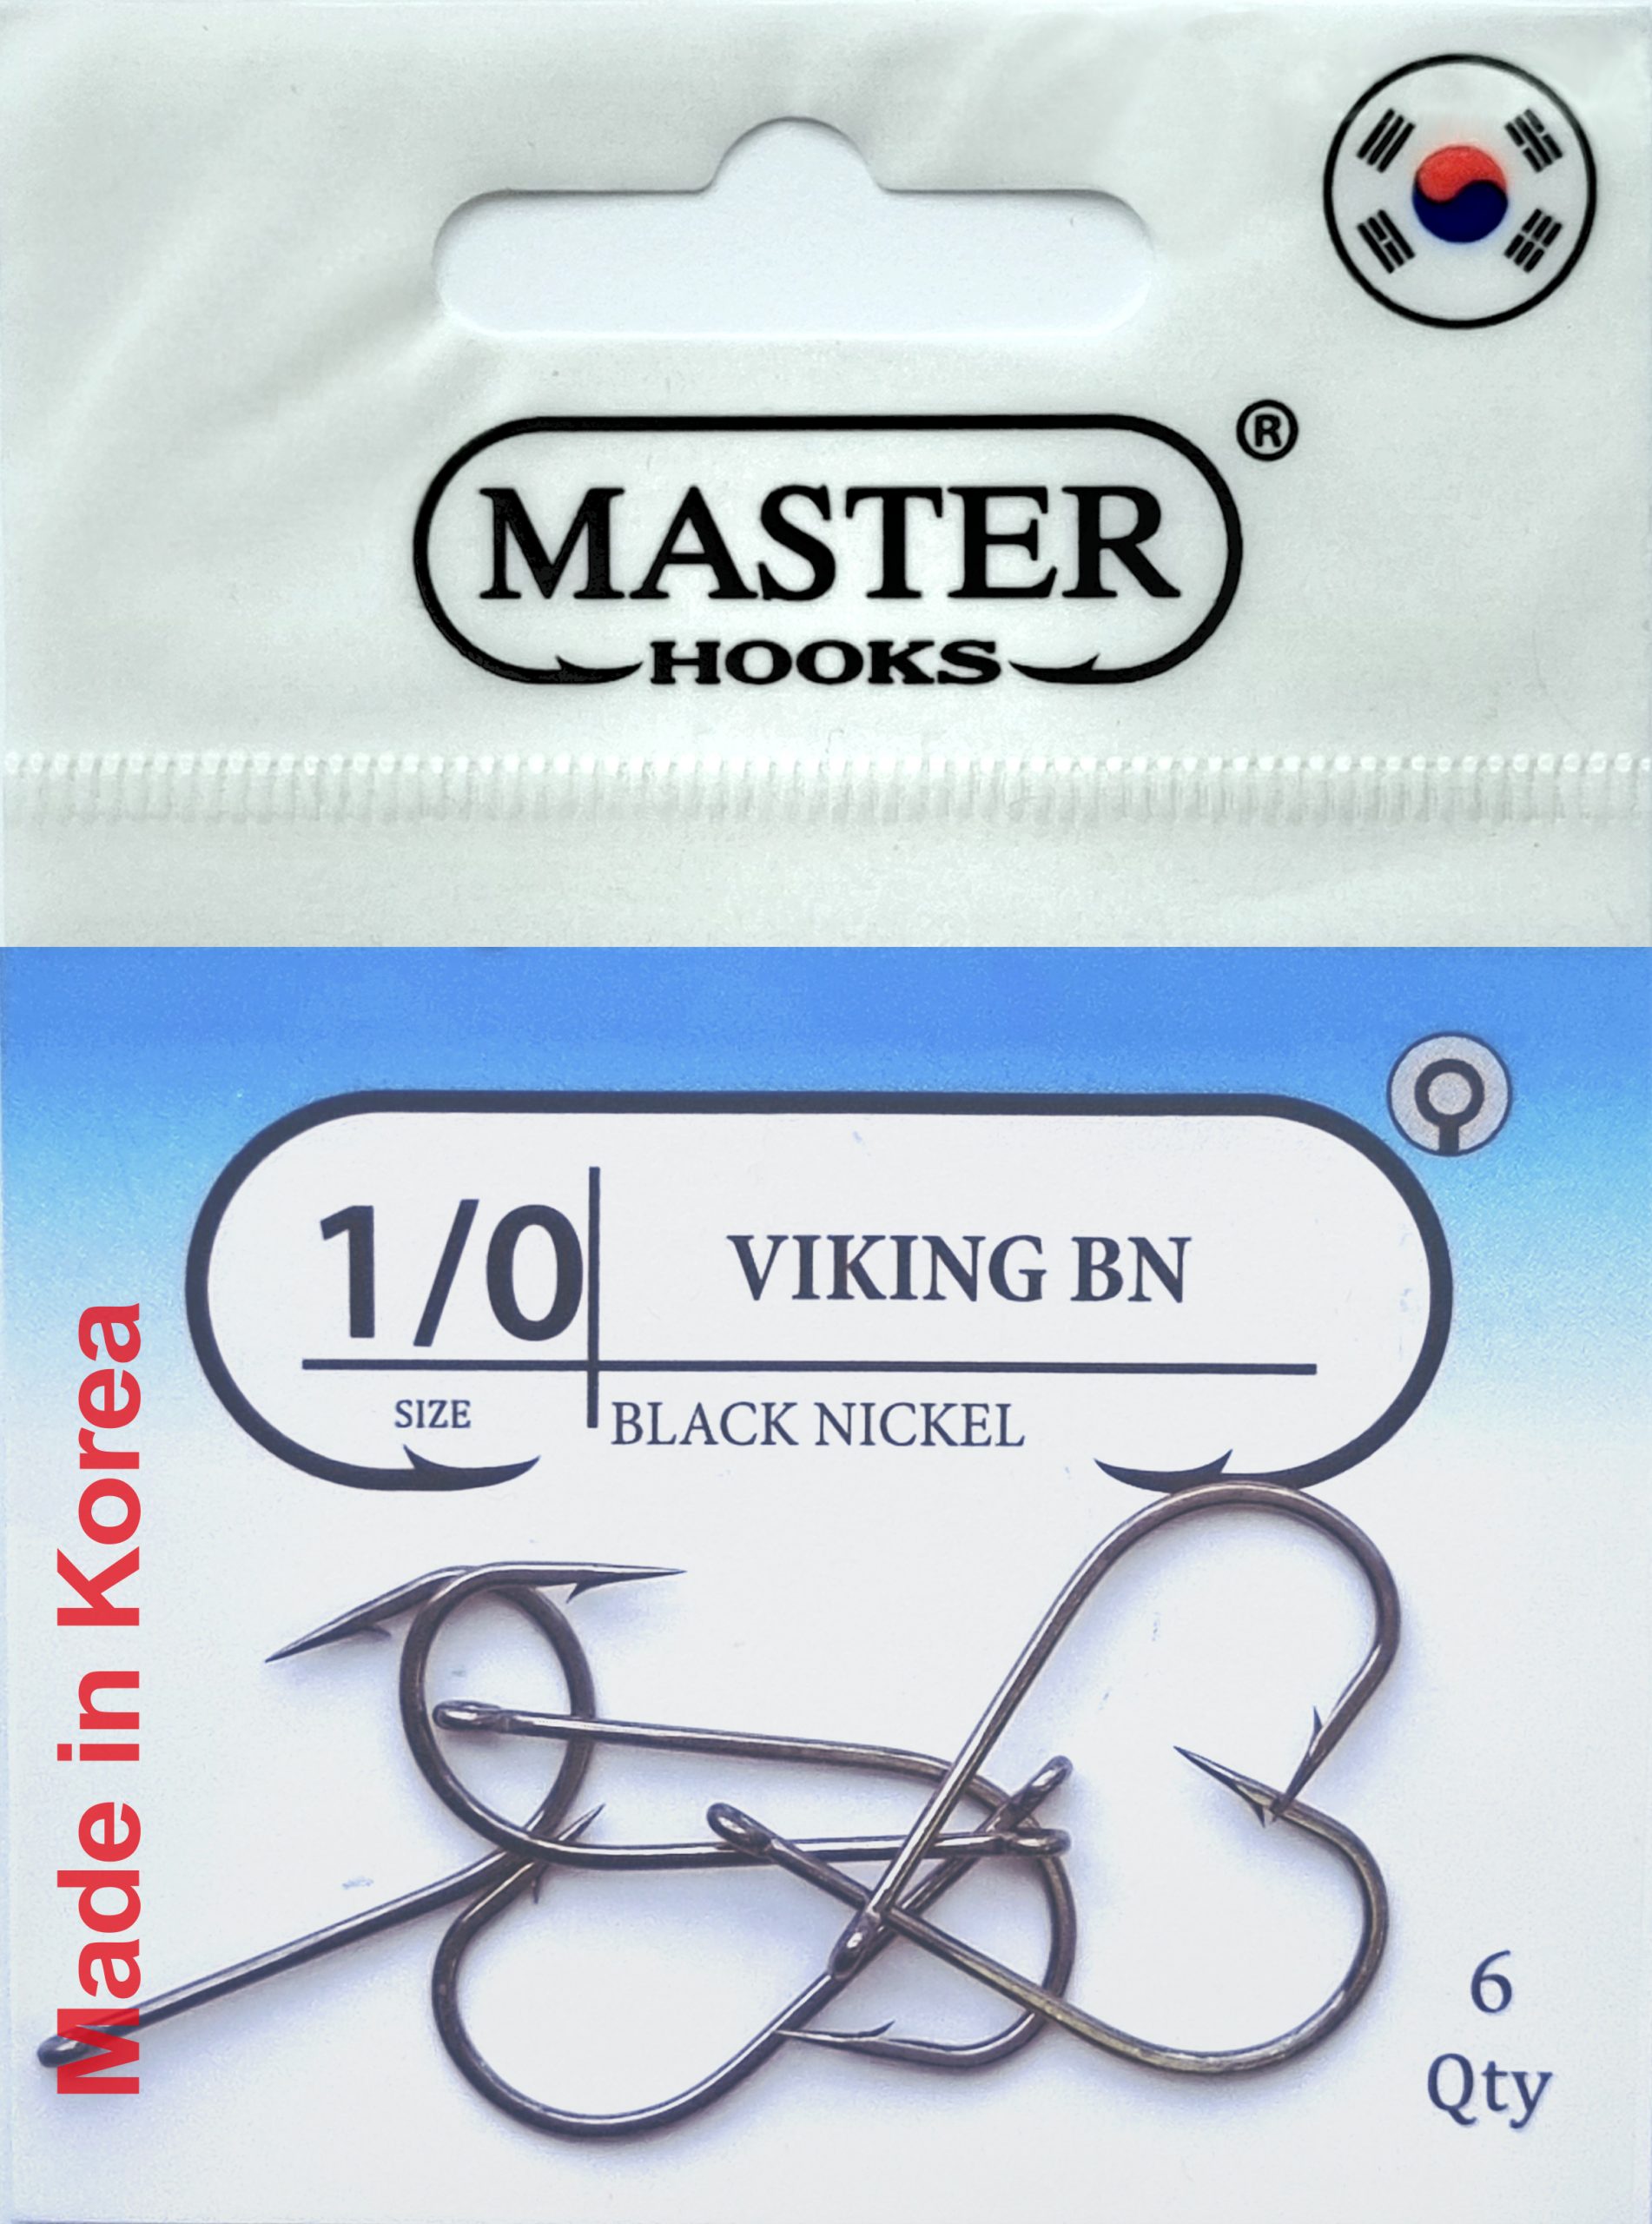 Гачки рибальські Кобра viking №8, 10шт: купити, ціна 9,88